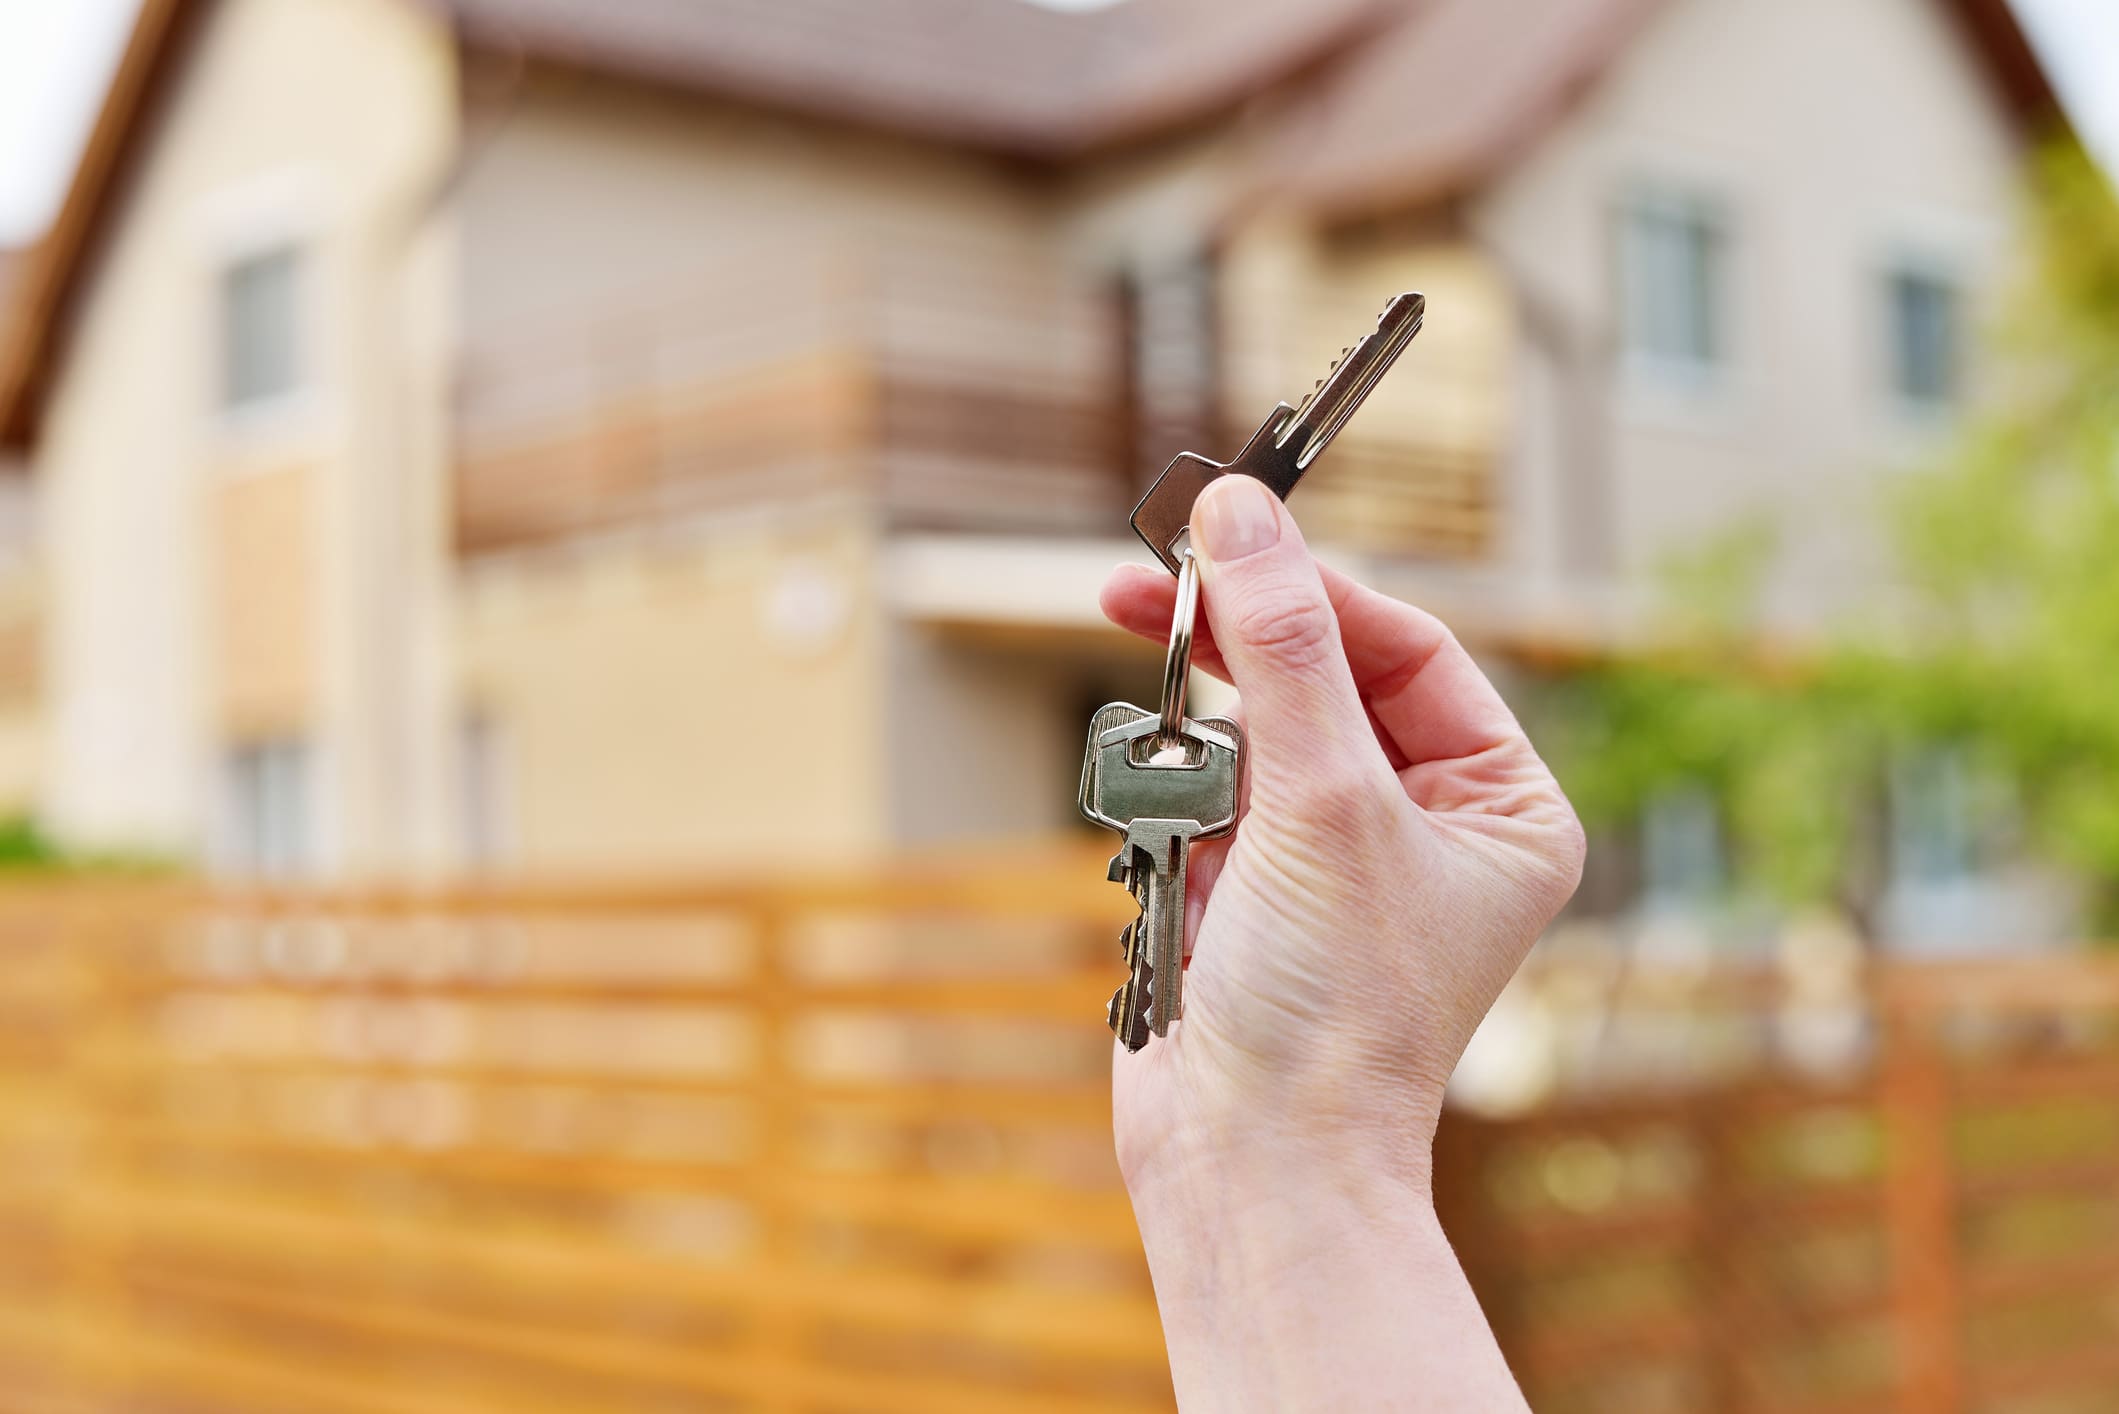 Egy lakás előtt állva egy női kéz kulcscsomót tart a kezében.